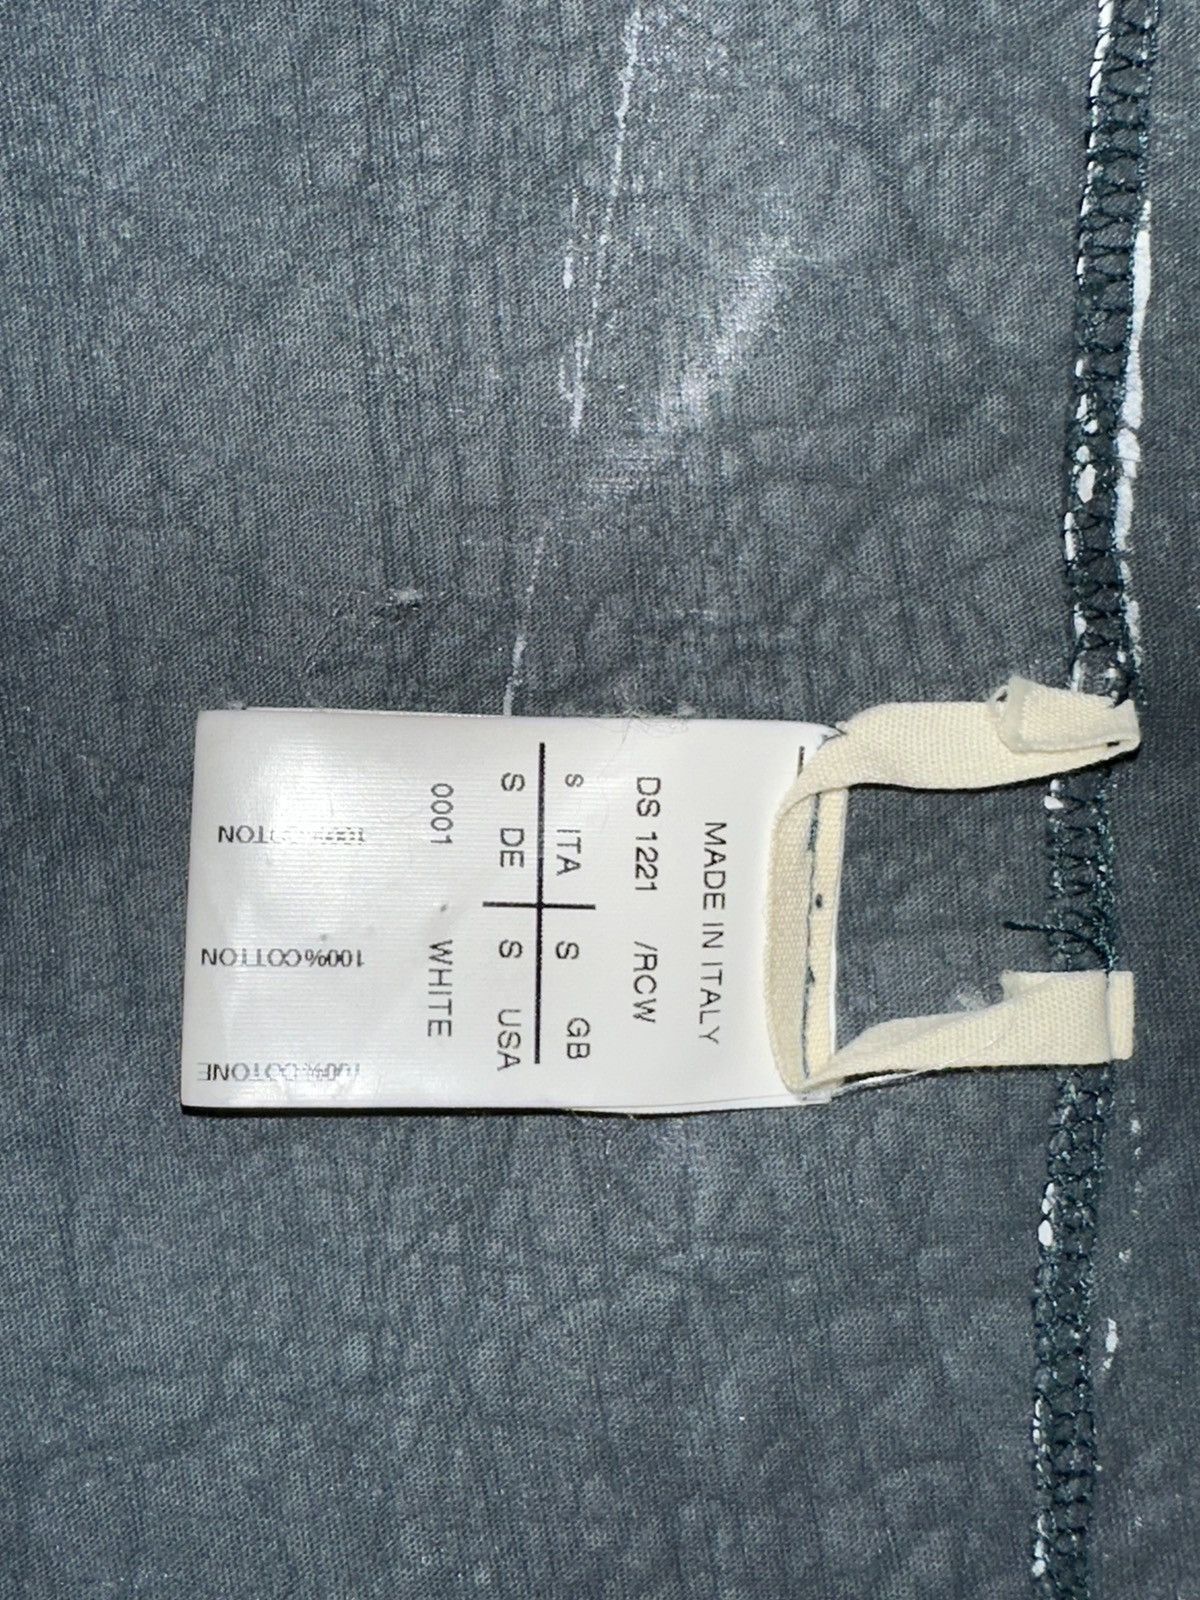 Rick Owens Drkshdw cracked paint vest 2012 - 5